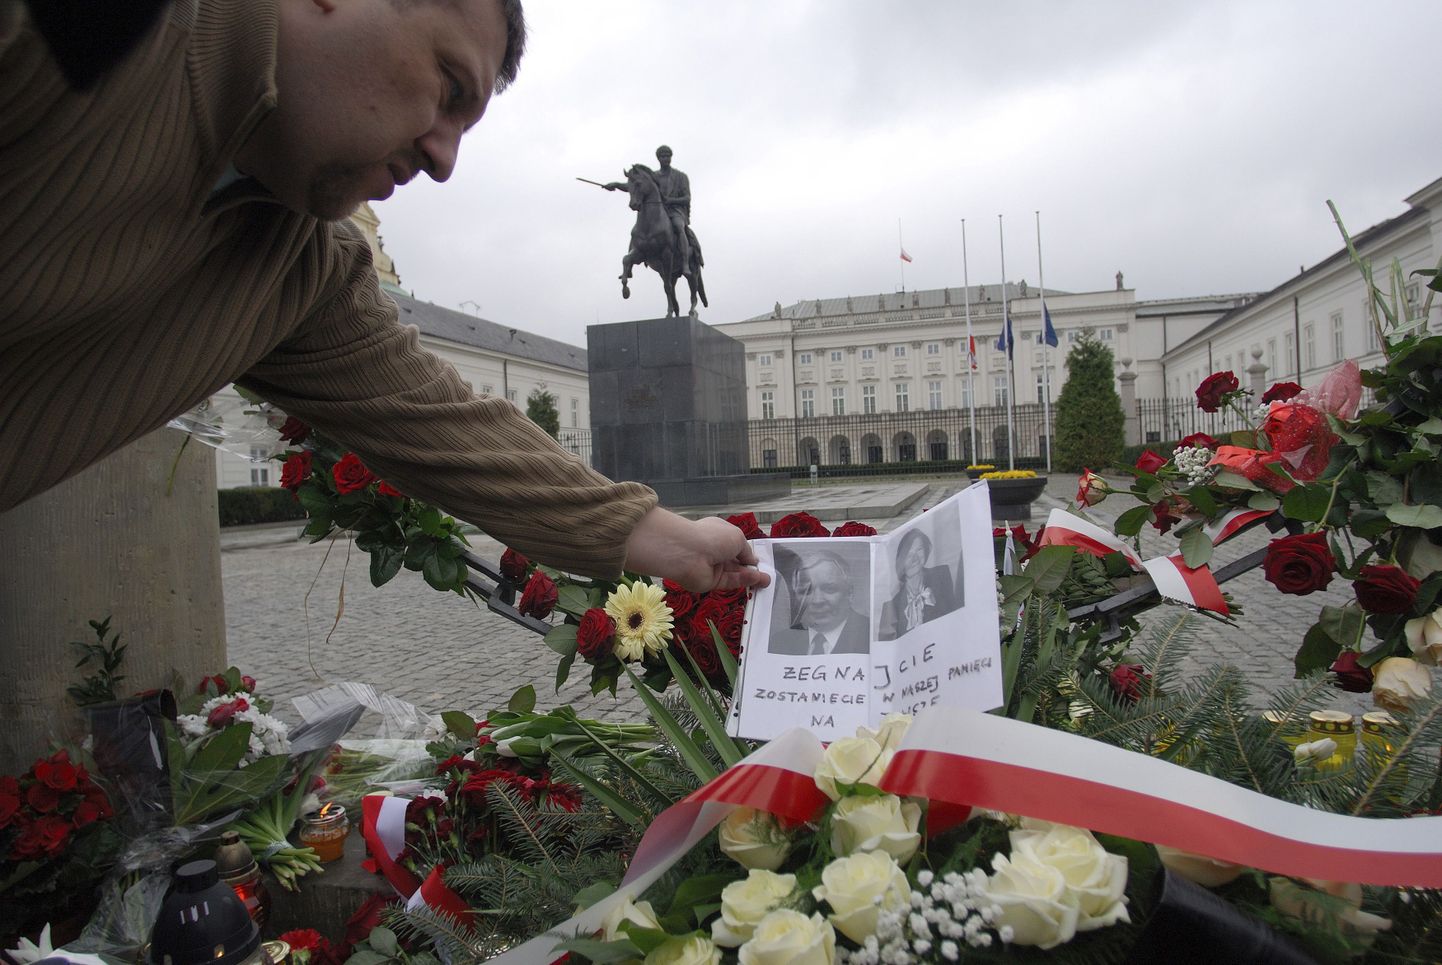 Poola mees asetamas lennuõnnetuses hukkunud president Lech Kaczyński ja tema abikaasa Maria pilte  presidendipalee ette kuhjuvate pärgade peale. Poolas kuulutati enneolematu tragöödia tõttu välja leinanädal.